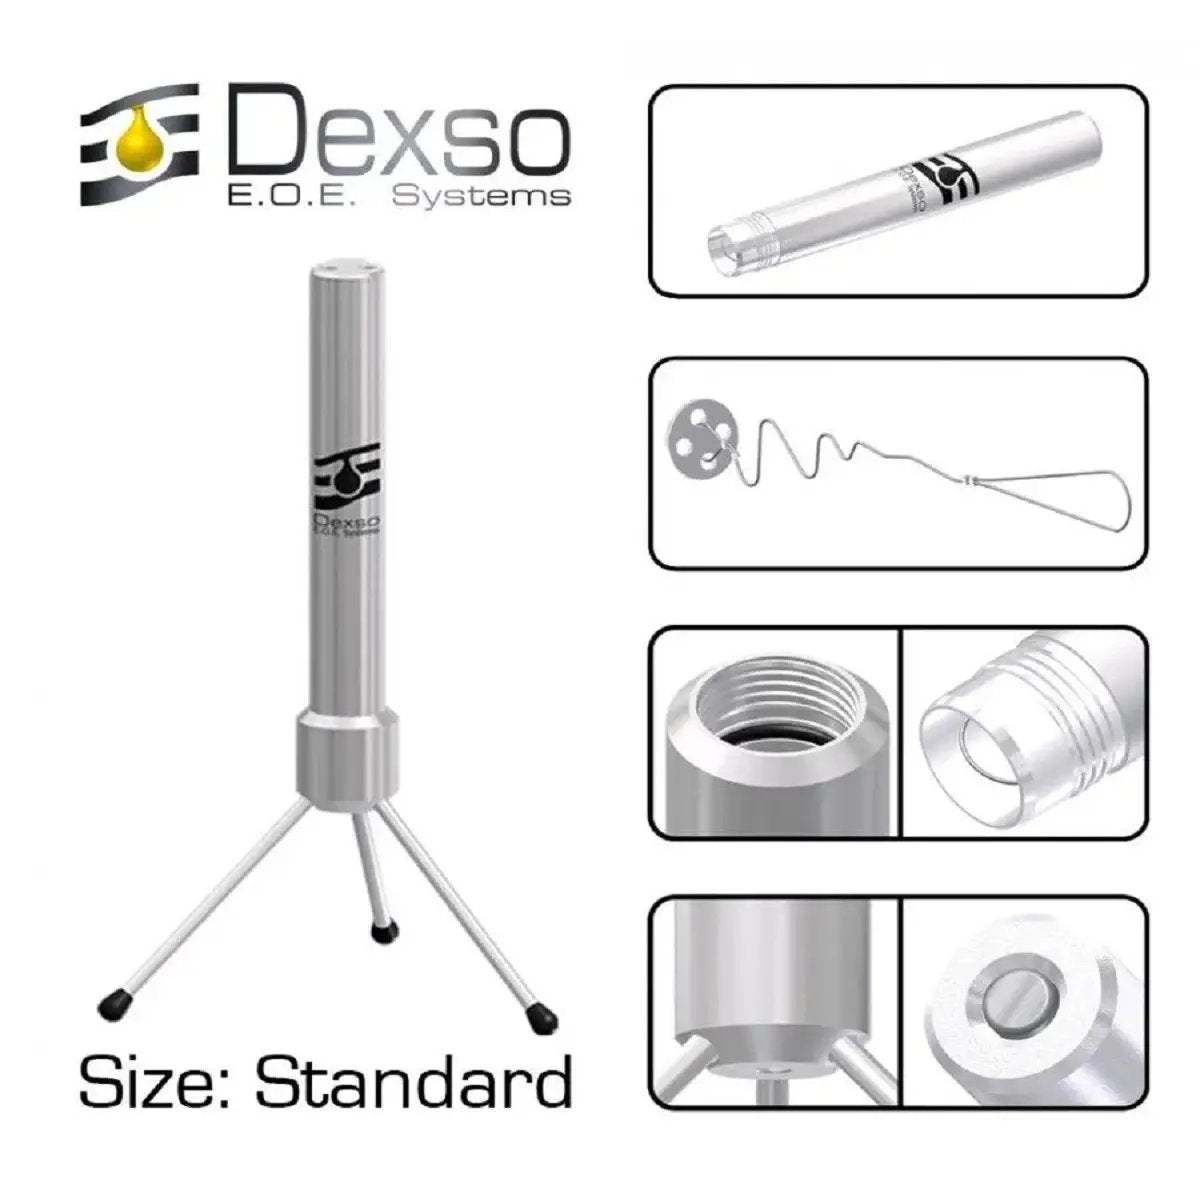 Dexso EOE - Estrattore standard